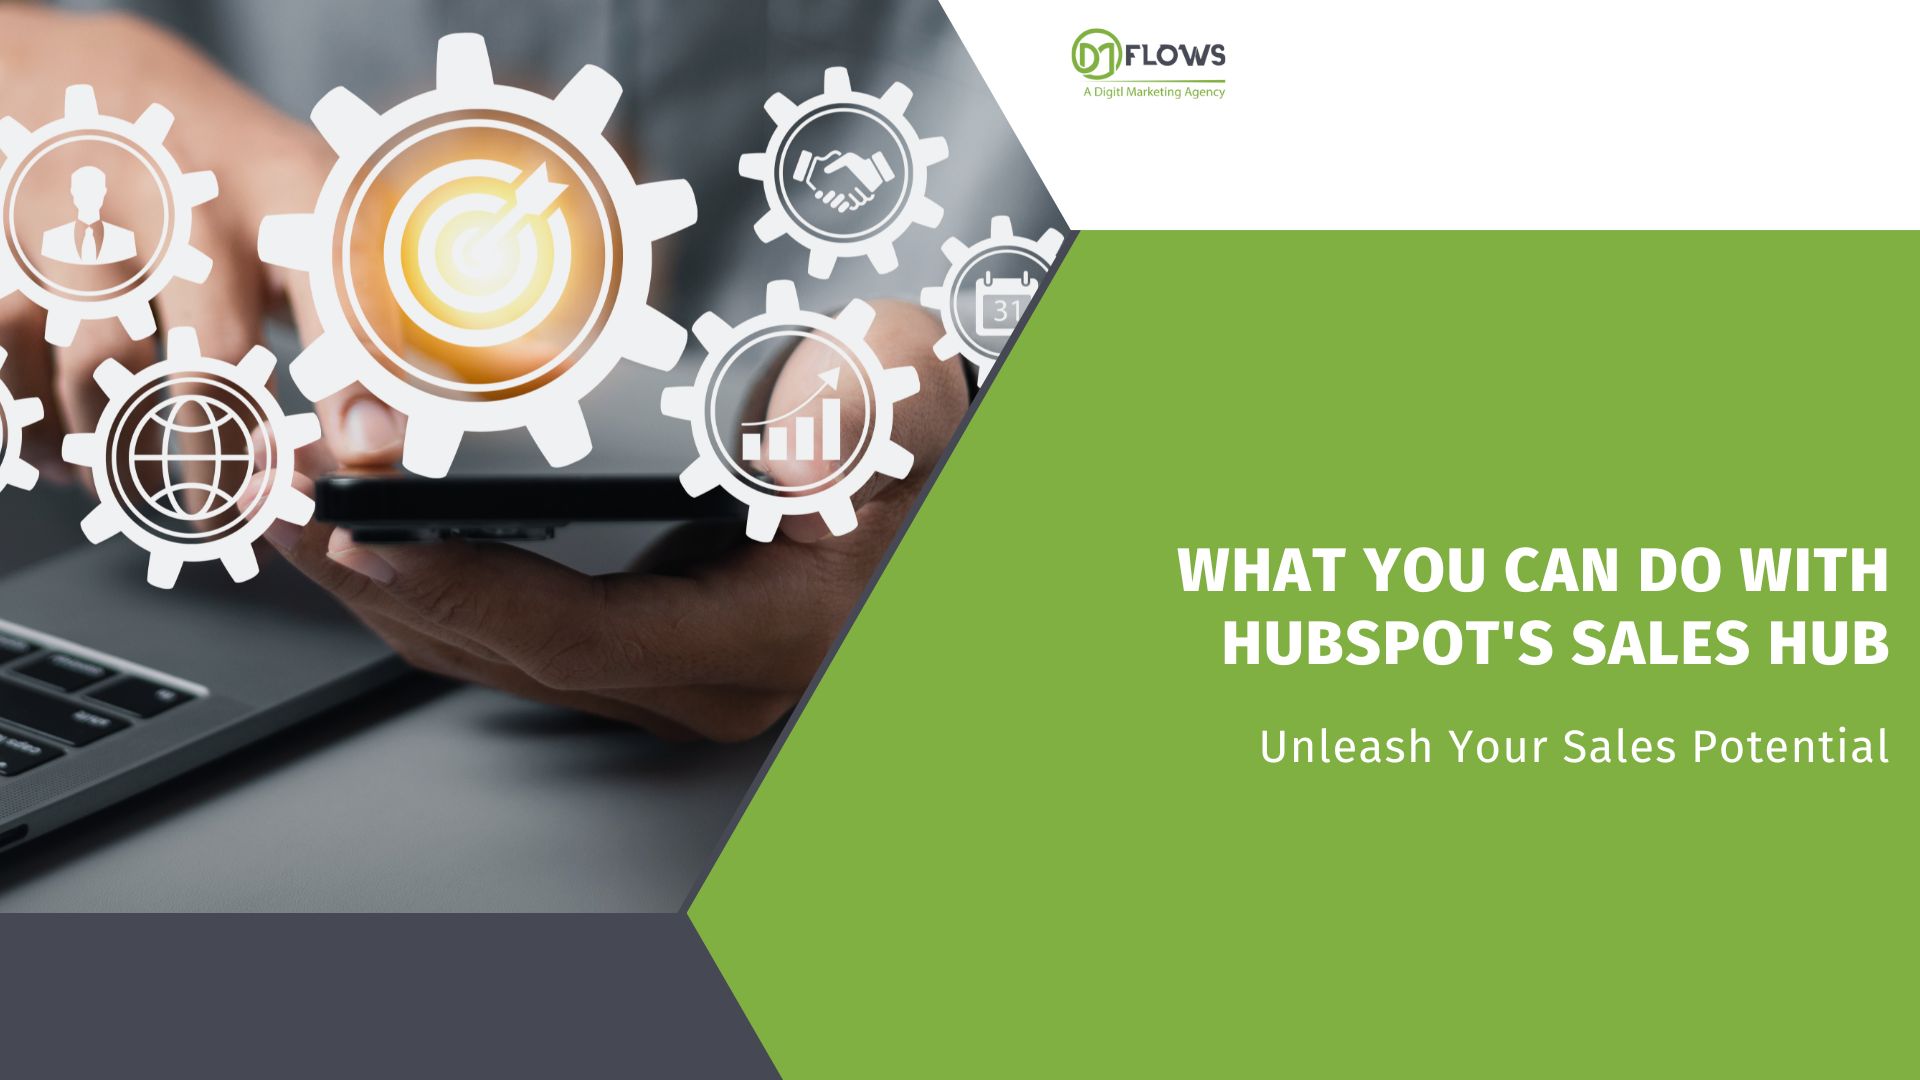 HubSpot's Sales Hub